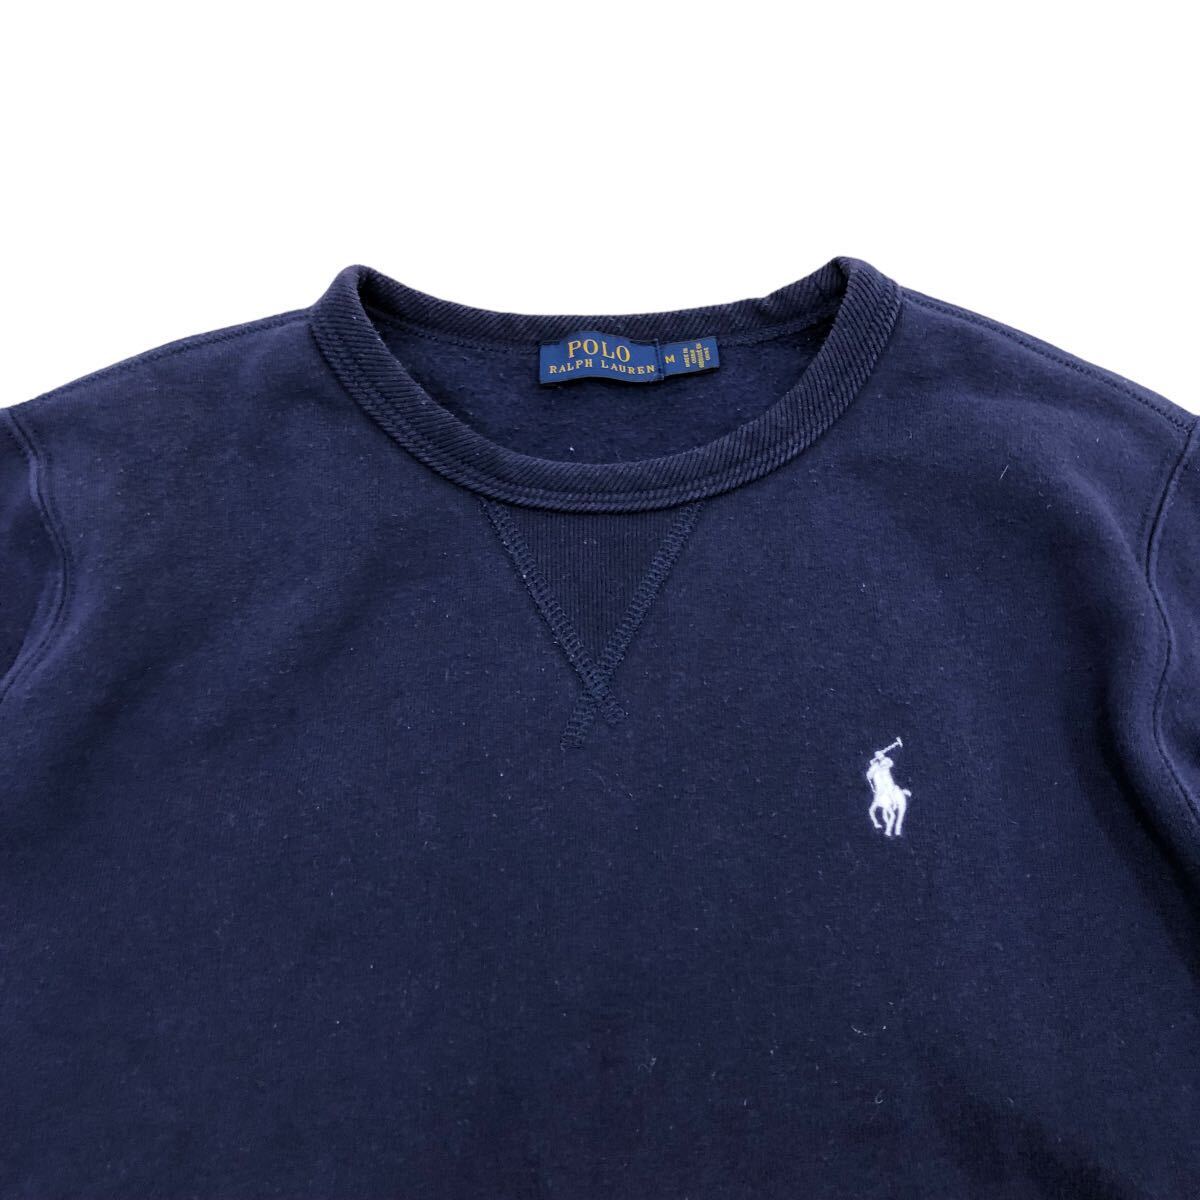 NB209 POLO RALPH LAUREN Polo Ralph Lauren длинный рукав тренировочный футболка tops тянуть over обратная сторона ворсистый темно-синий темно-синий женский M